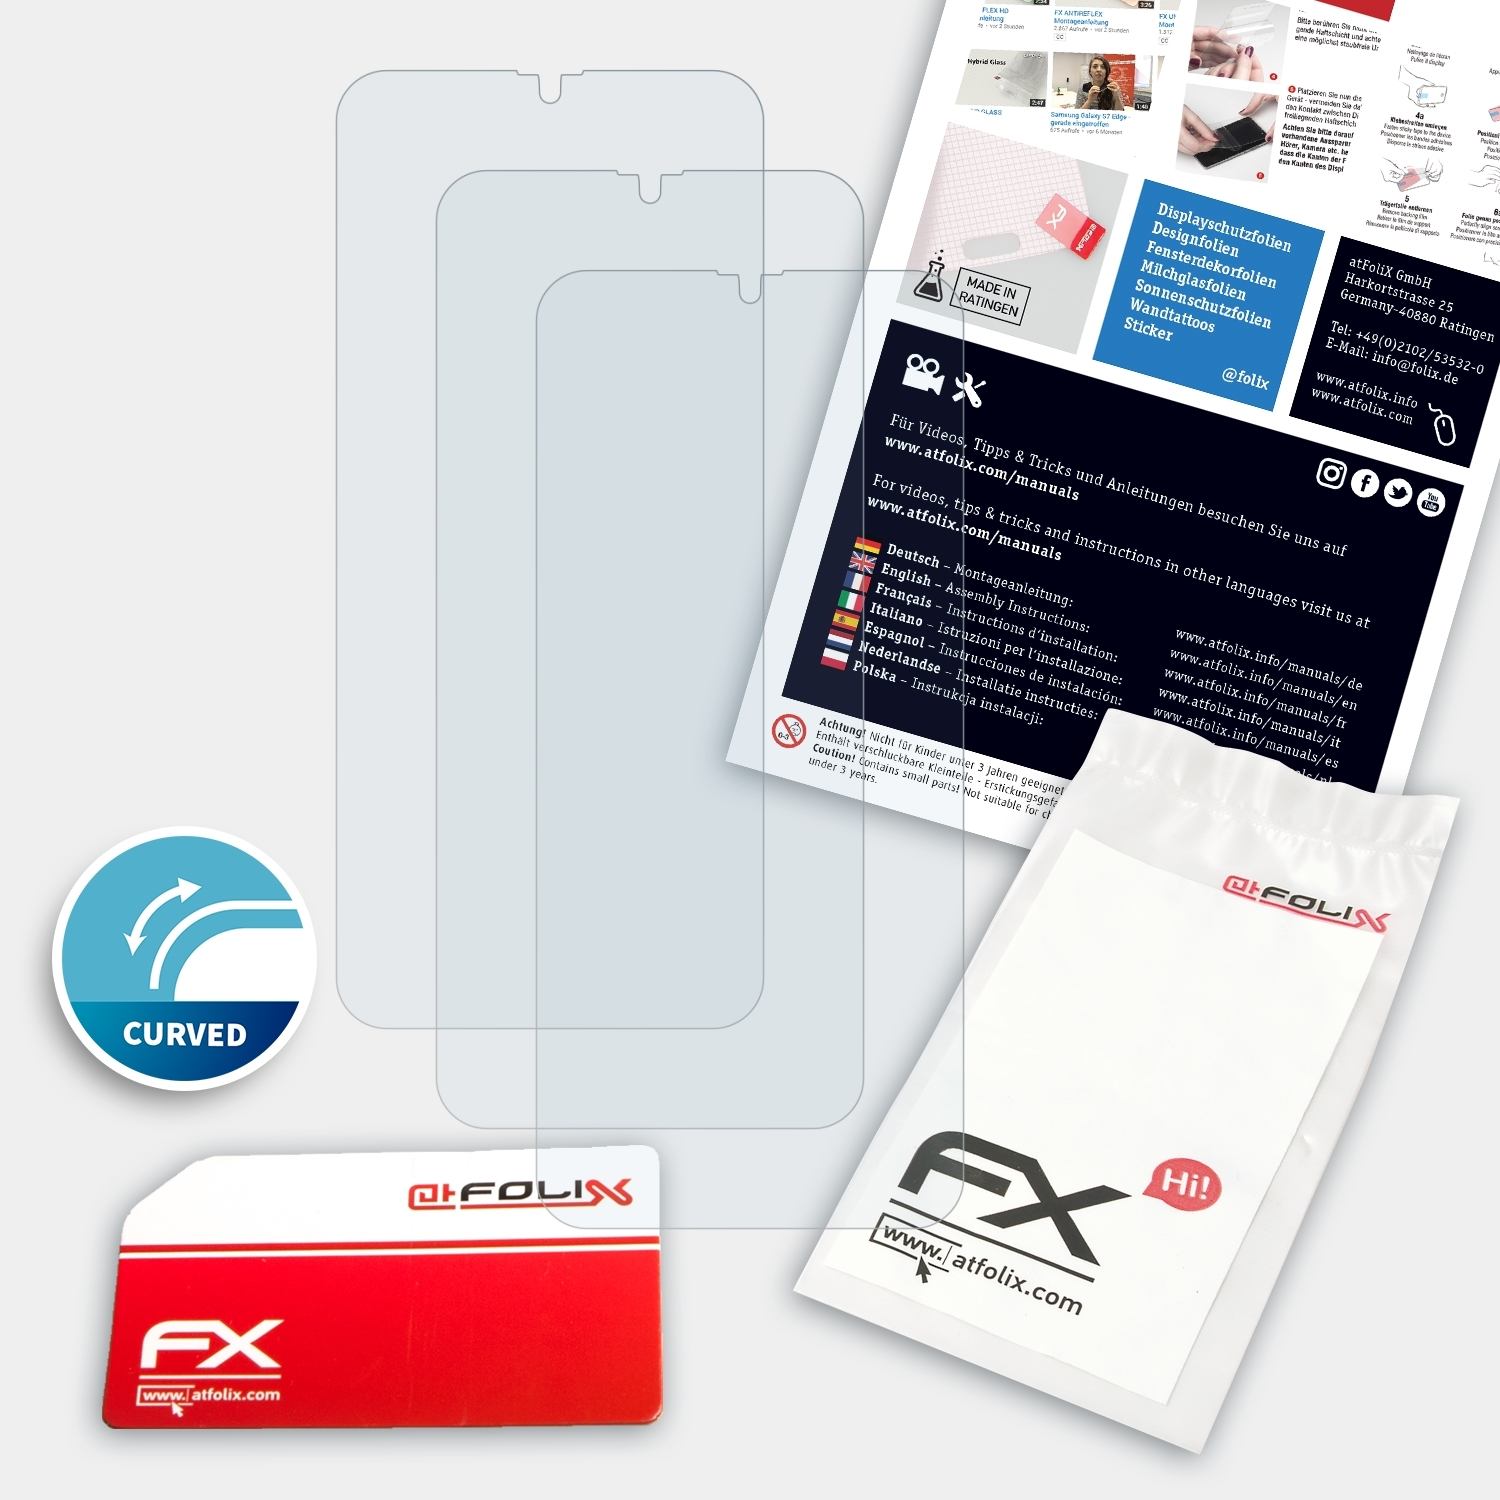 3x Displayschutz(für C15 FX-ActiFleX ATFOLIX Oukitel Pro)